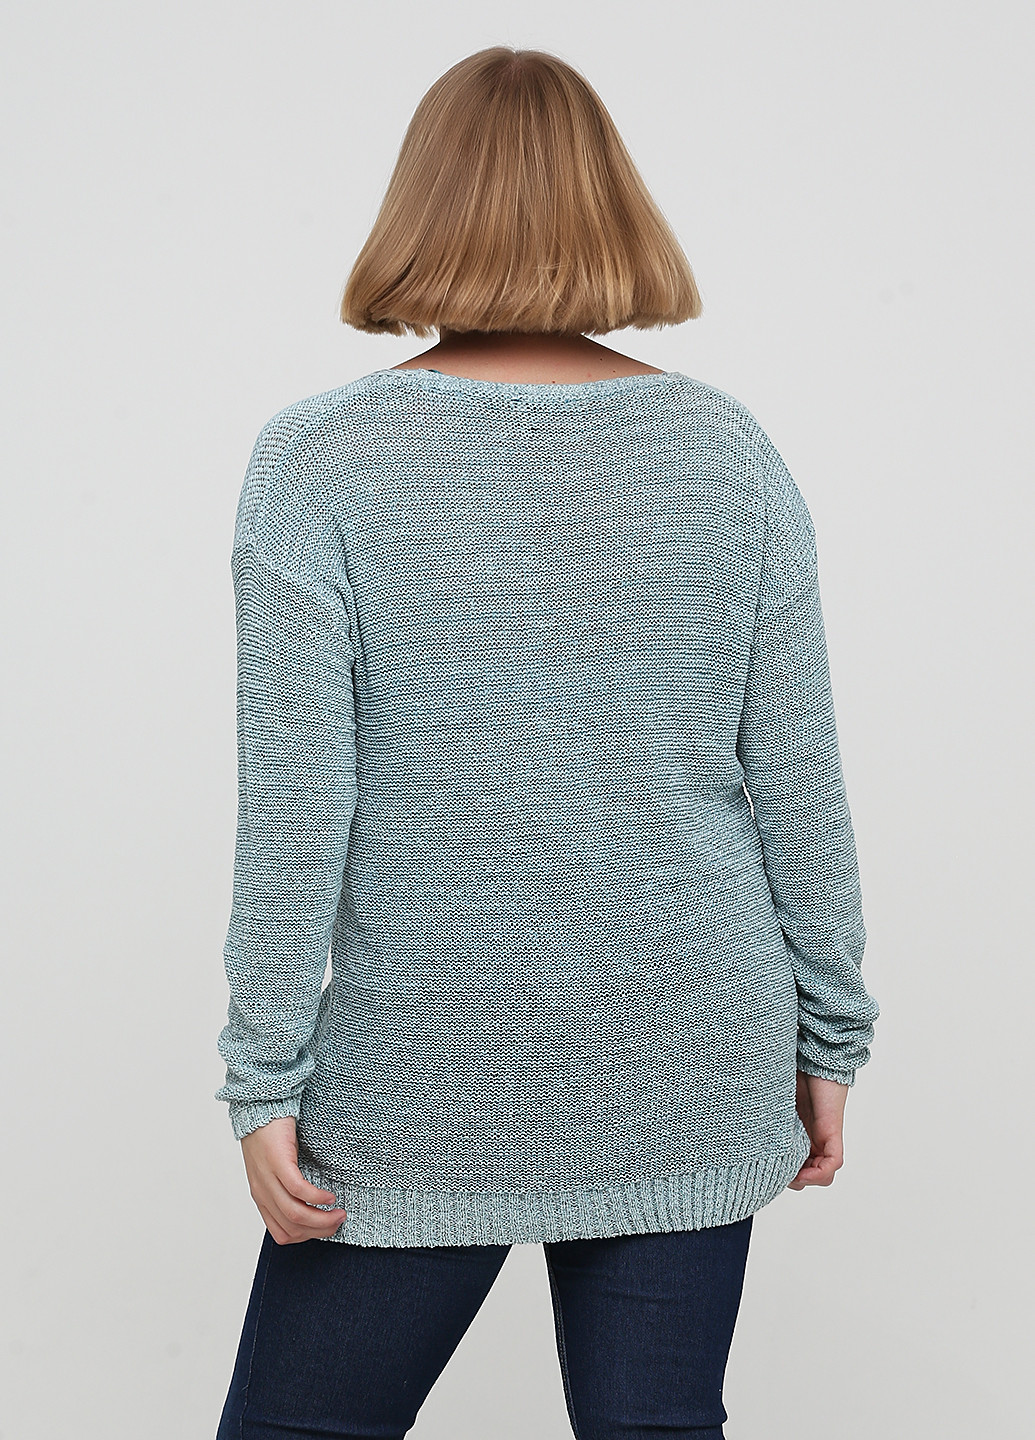 Серо-голубой демисезонный пуловер пуловер Tom Tailor